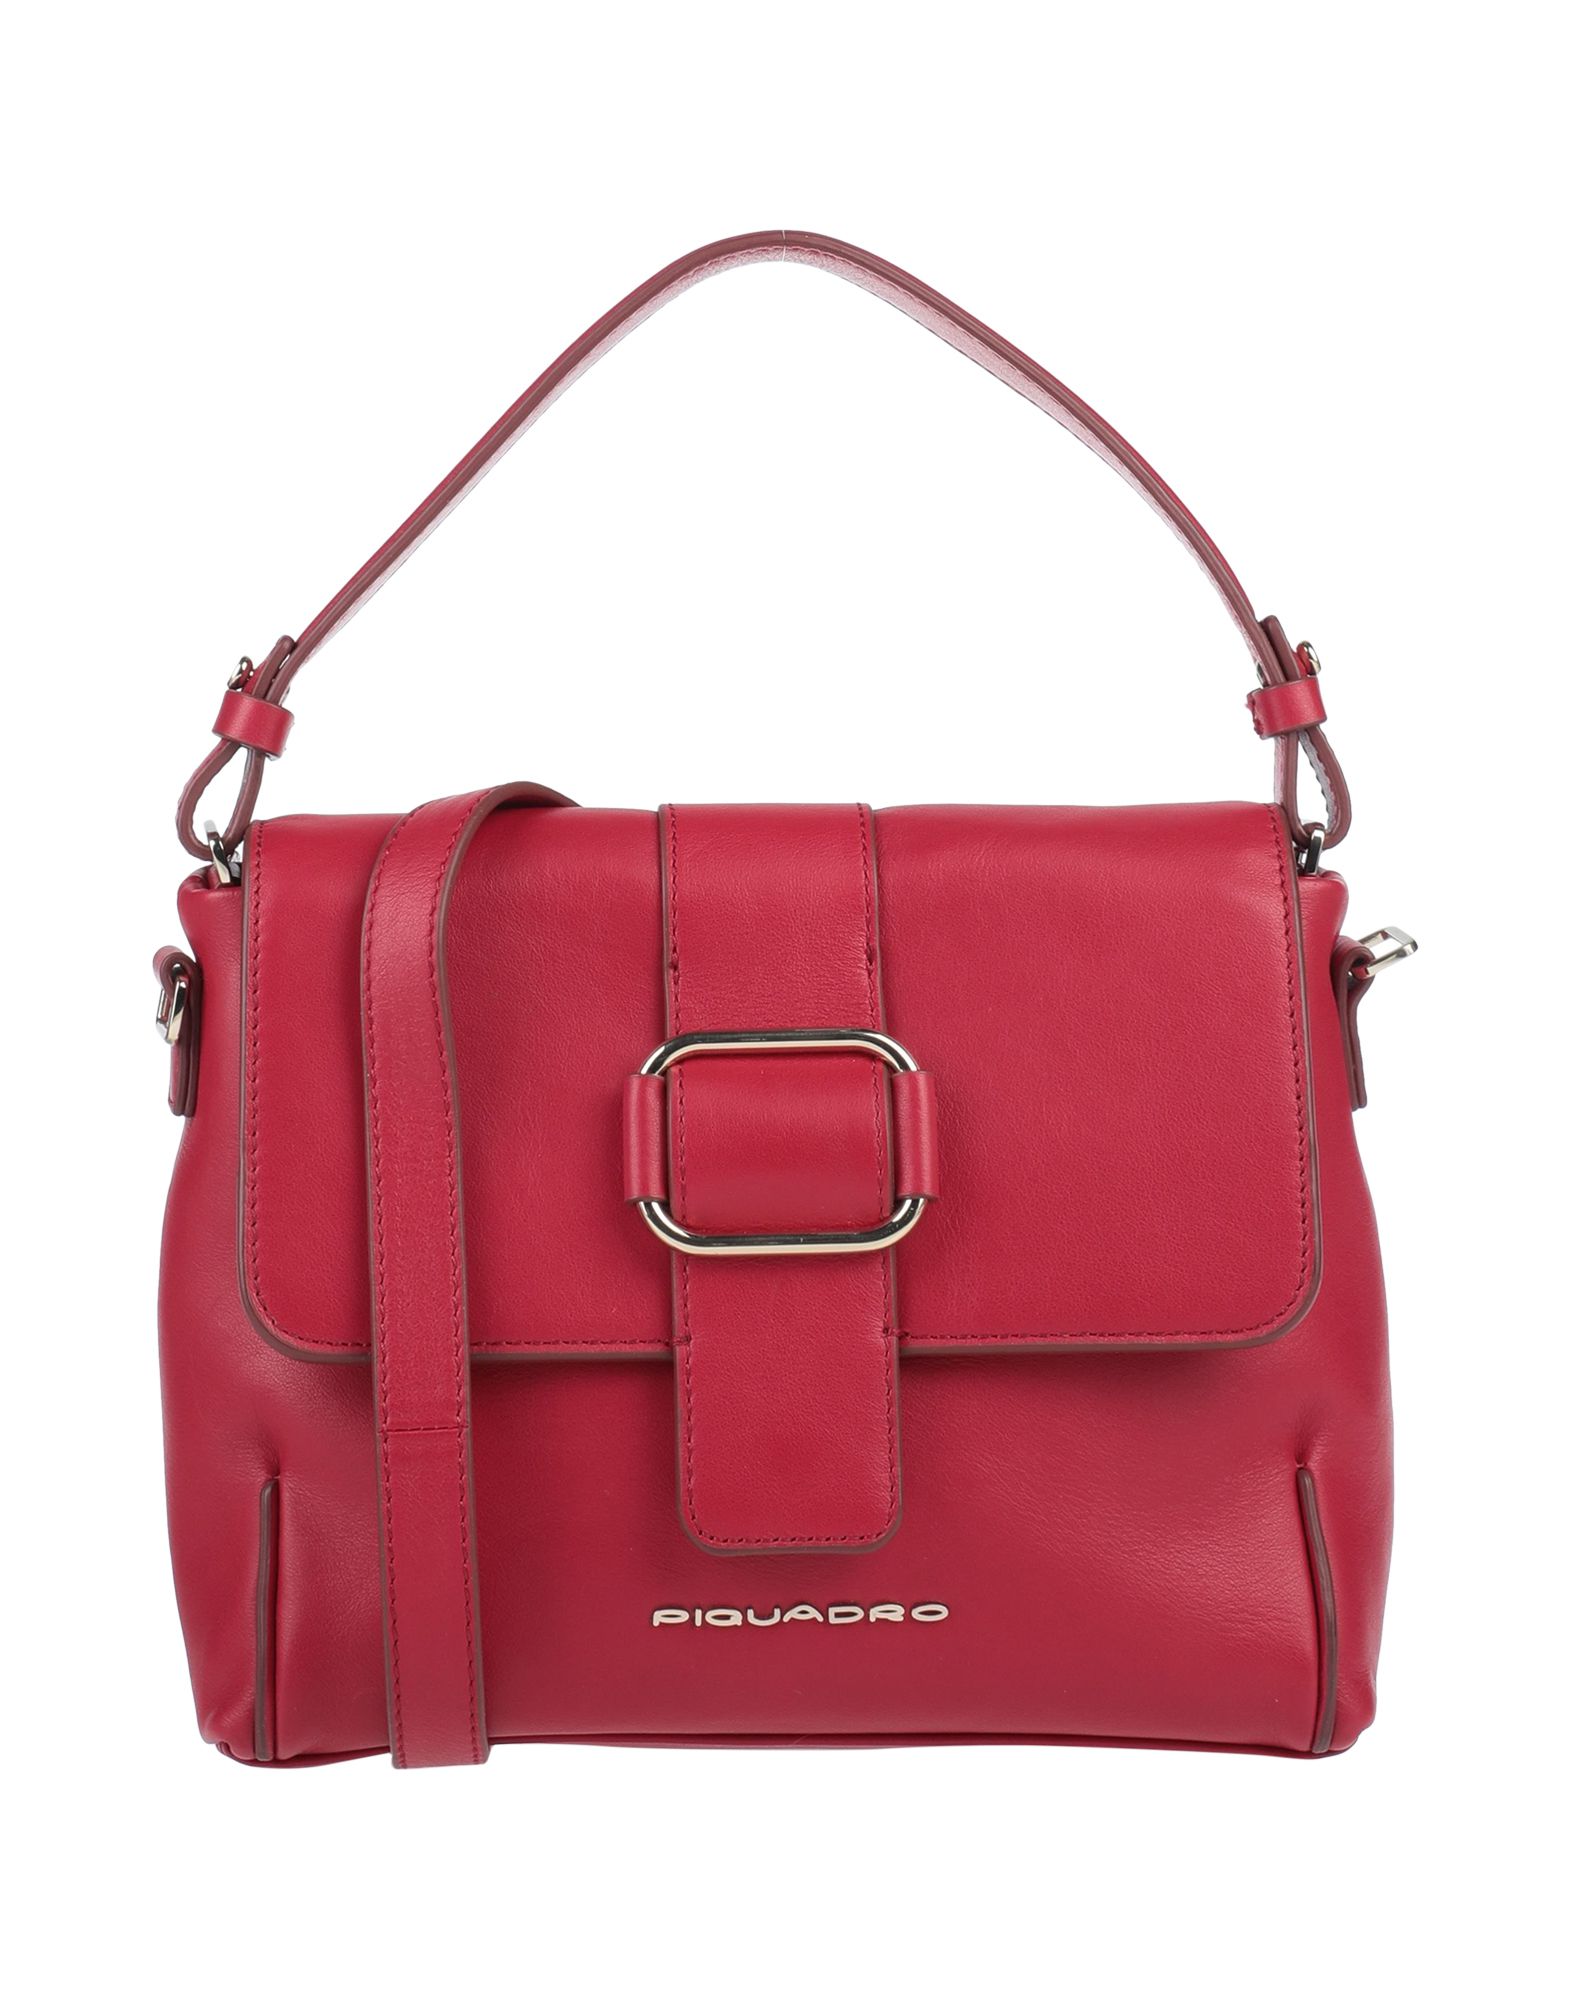 PIQUADRO Handbags - Item 45499536